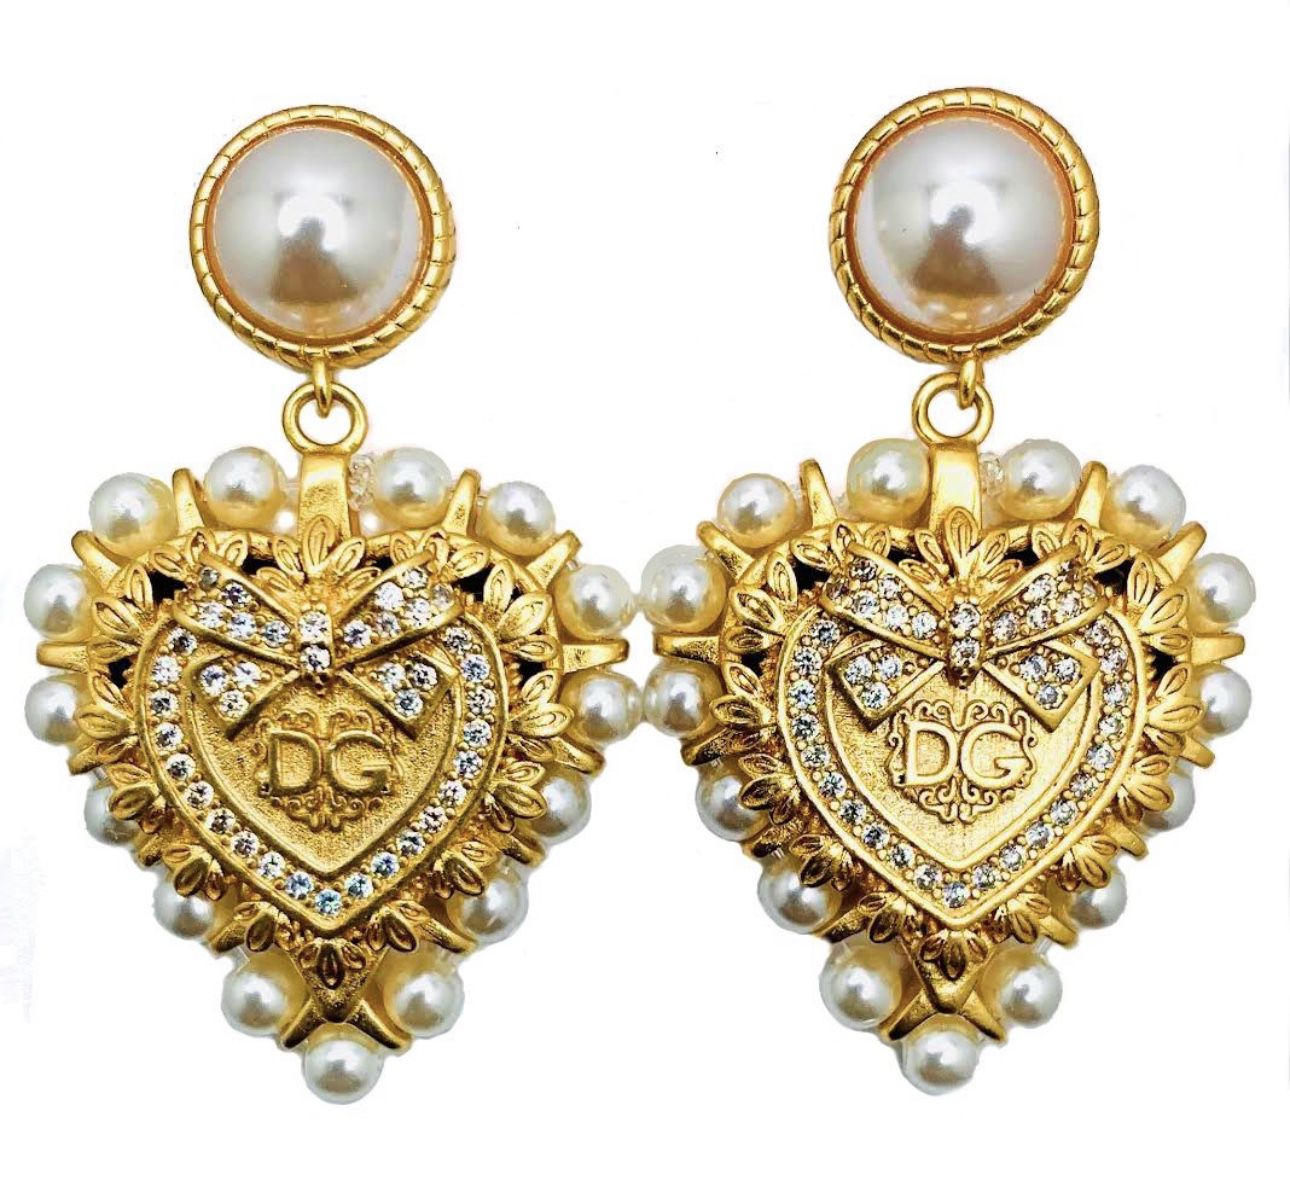 DG Vintage Heart earrings Dolce Gabbana 